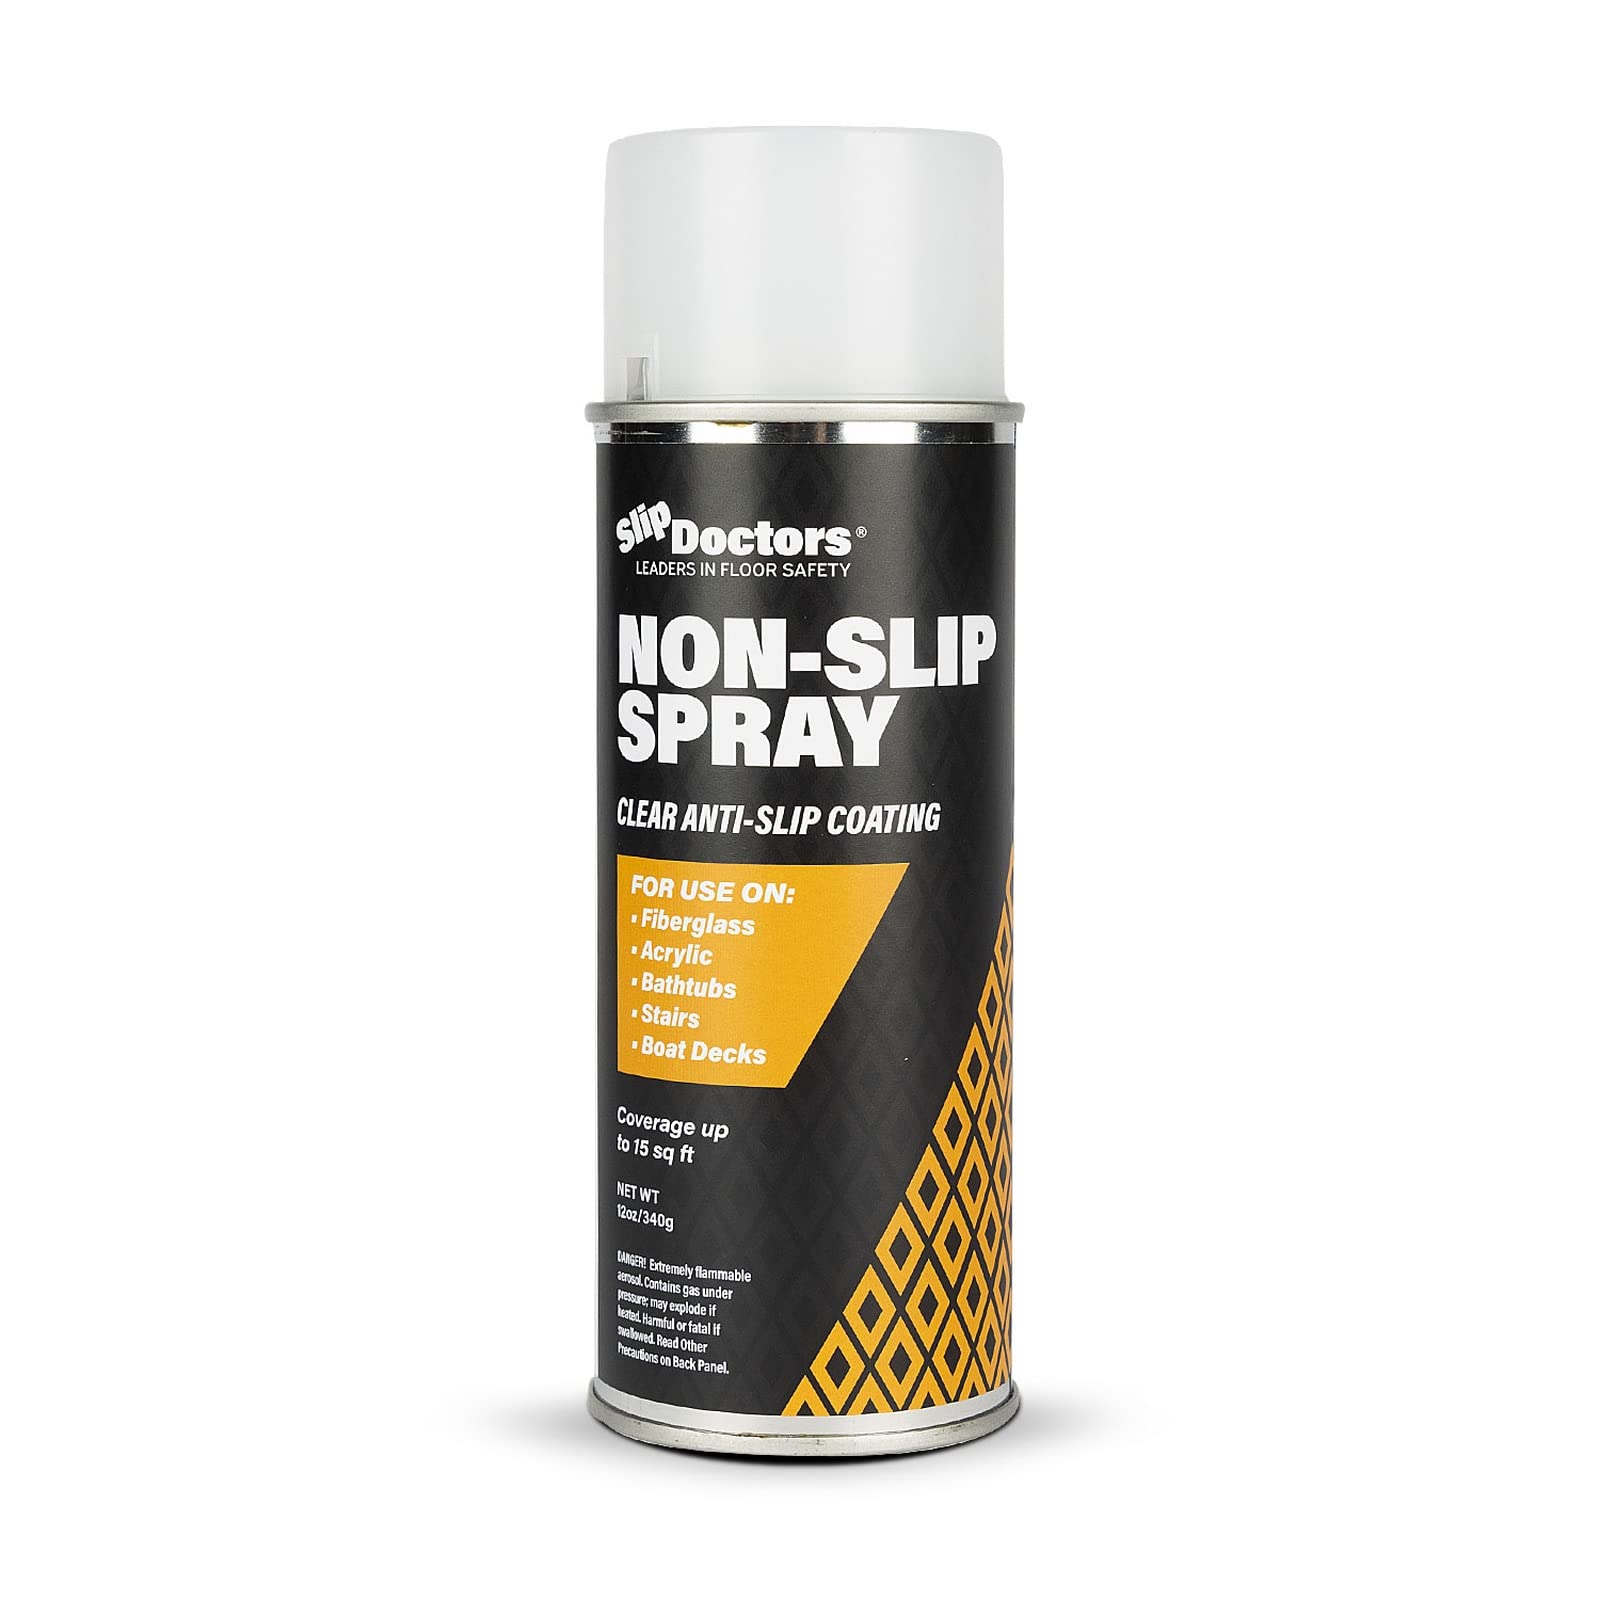 Anti-Slip Spray Coating for Wet Slippery Floors & Surfaces